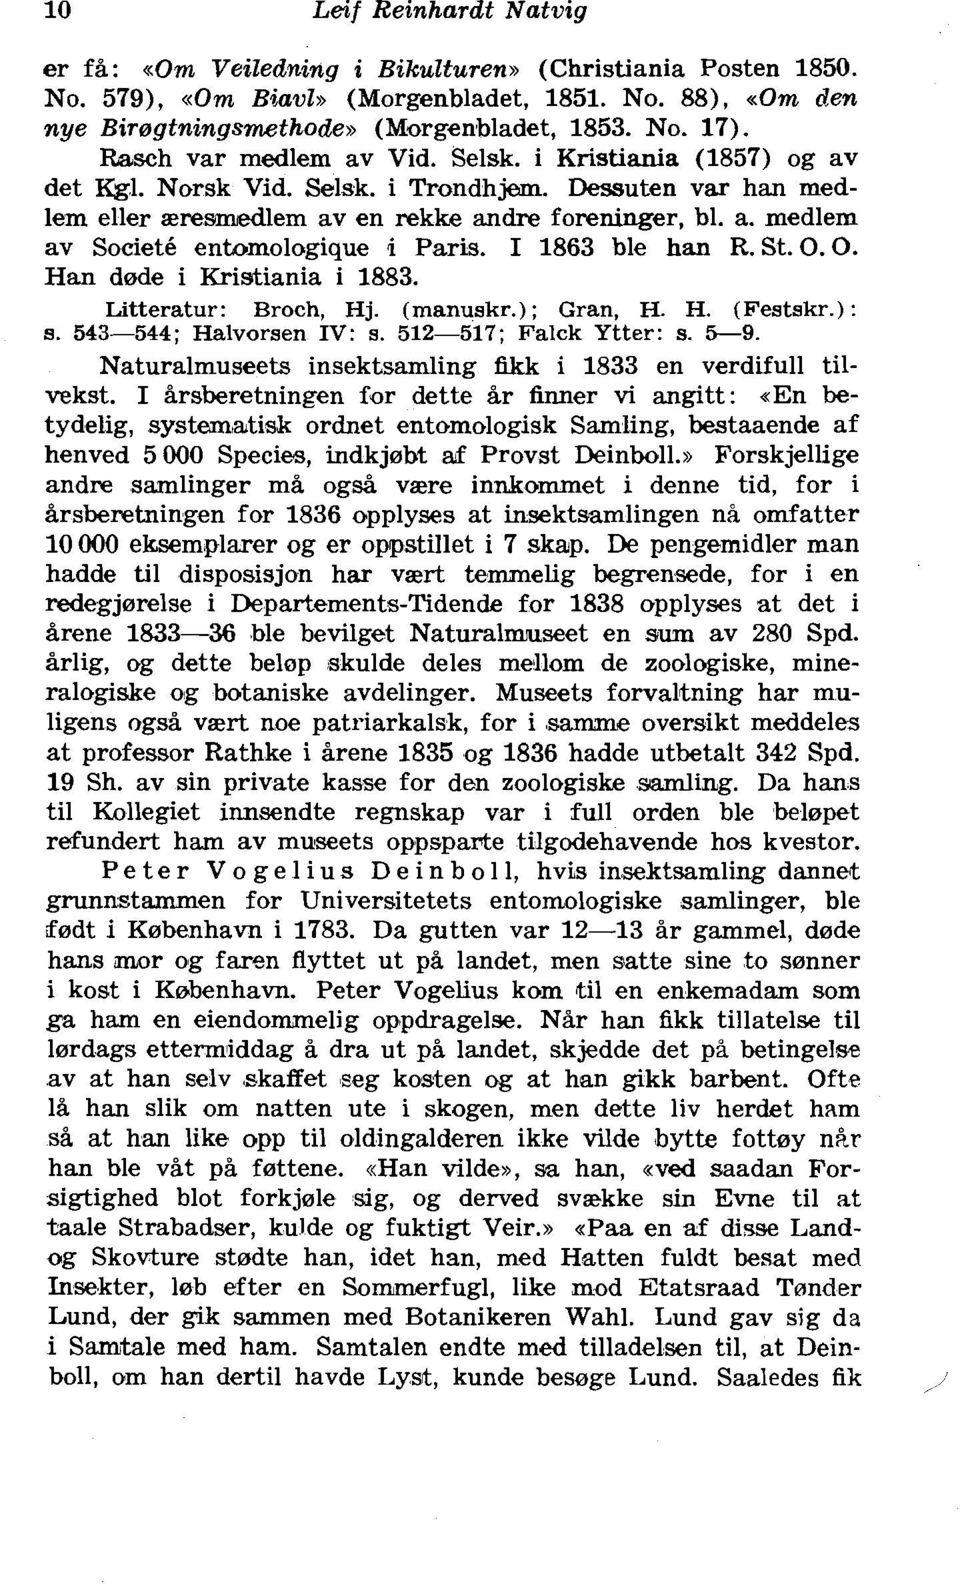 I 1863 ble han R. St. 0.0. Han dode i Kristiania i 1883. Litteratur: Broch, Hj. (manuskr.); Gran, H. H. (Festskr.): s. 543-544; Halvorsen IV: s. 512-517; Falck Ytter: s. 5-9.